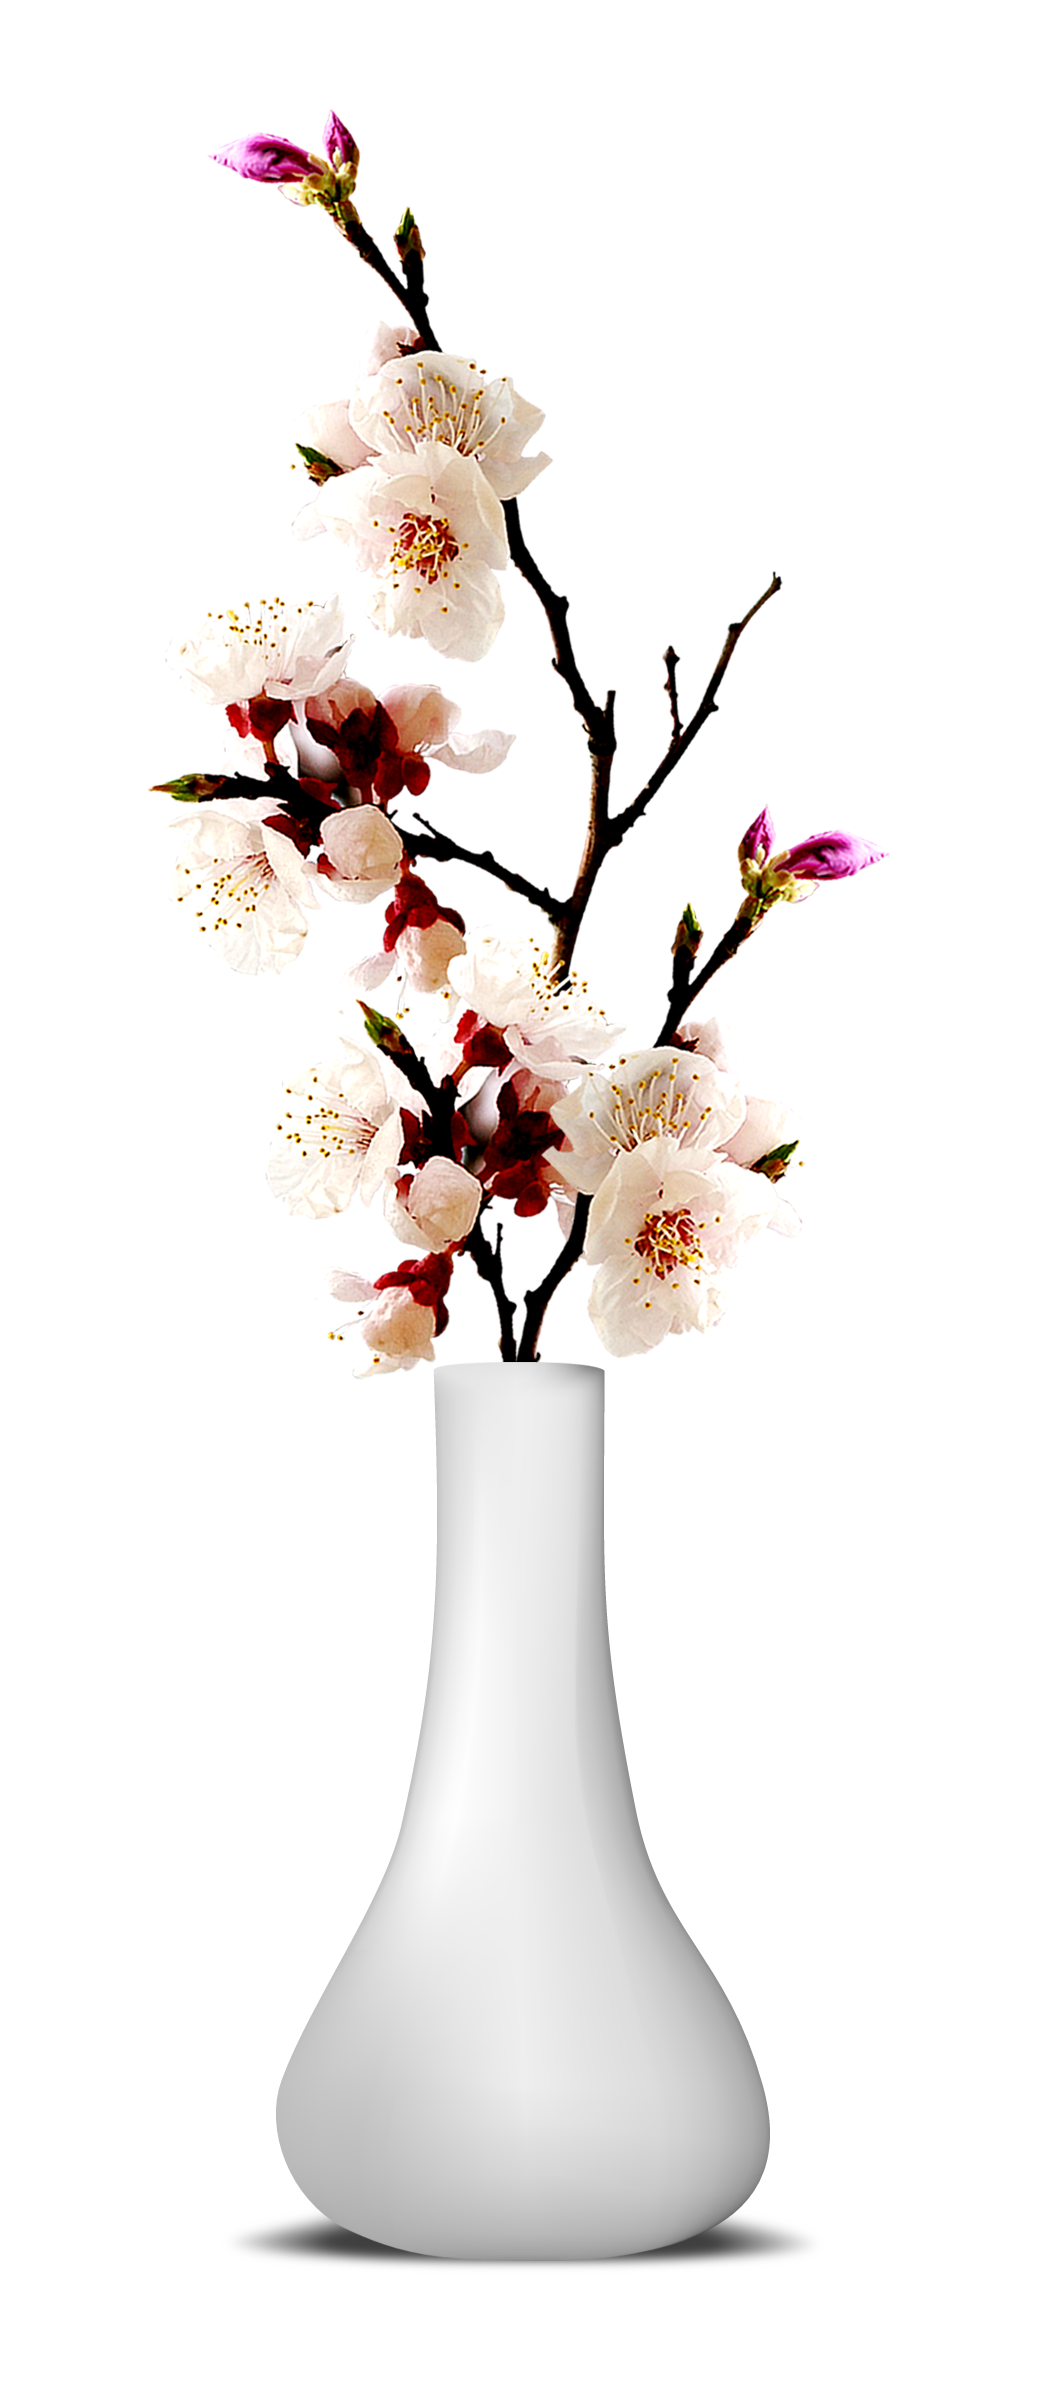 Download PNG image - Flower Vase PNG Transparent Image 